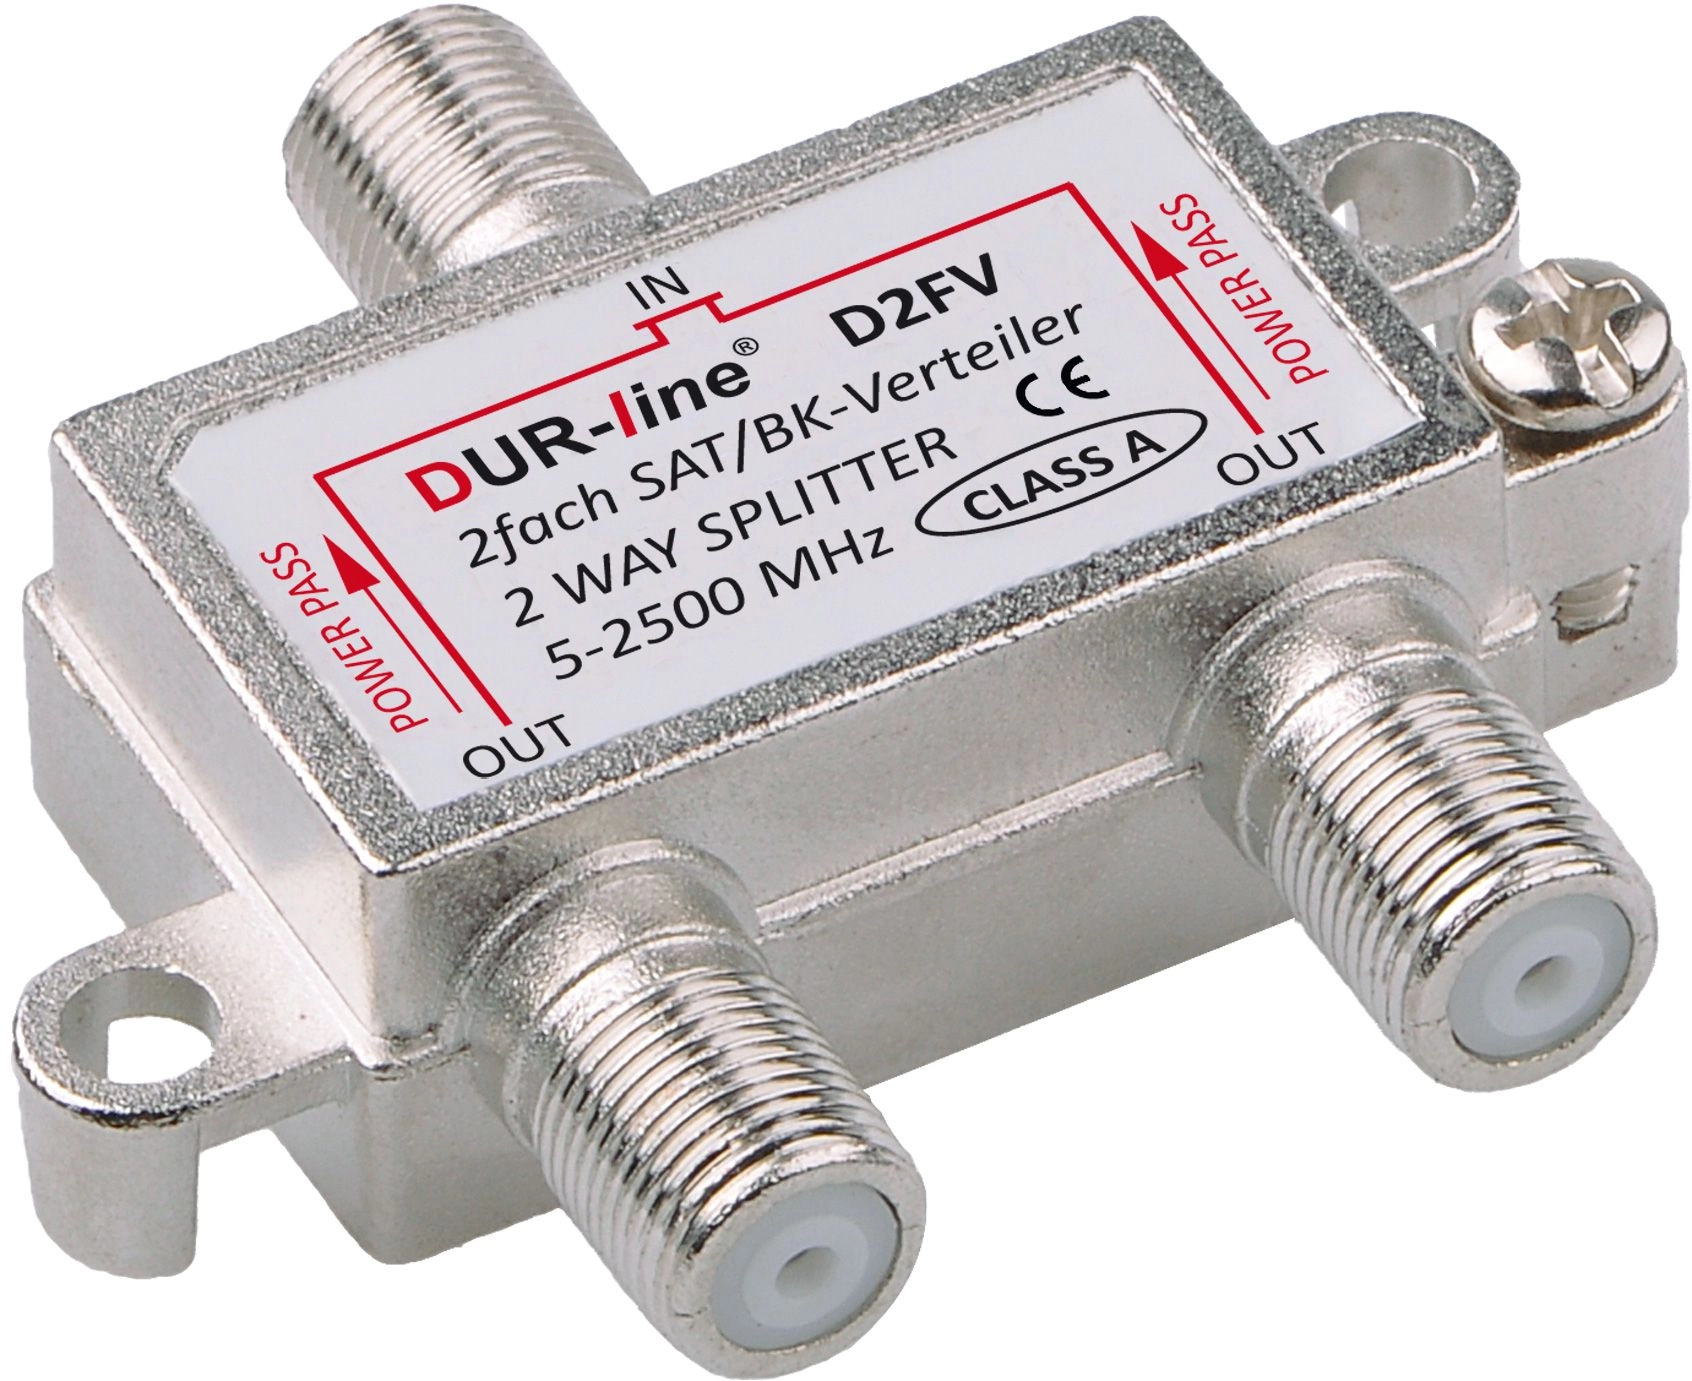 DUR-line D2FV - BK/SAT-Verteiler